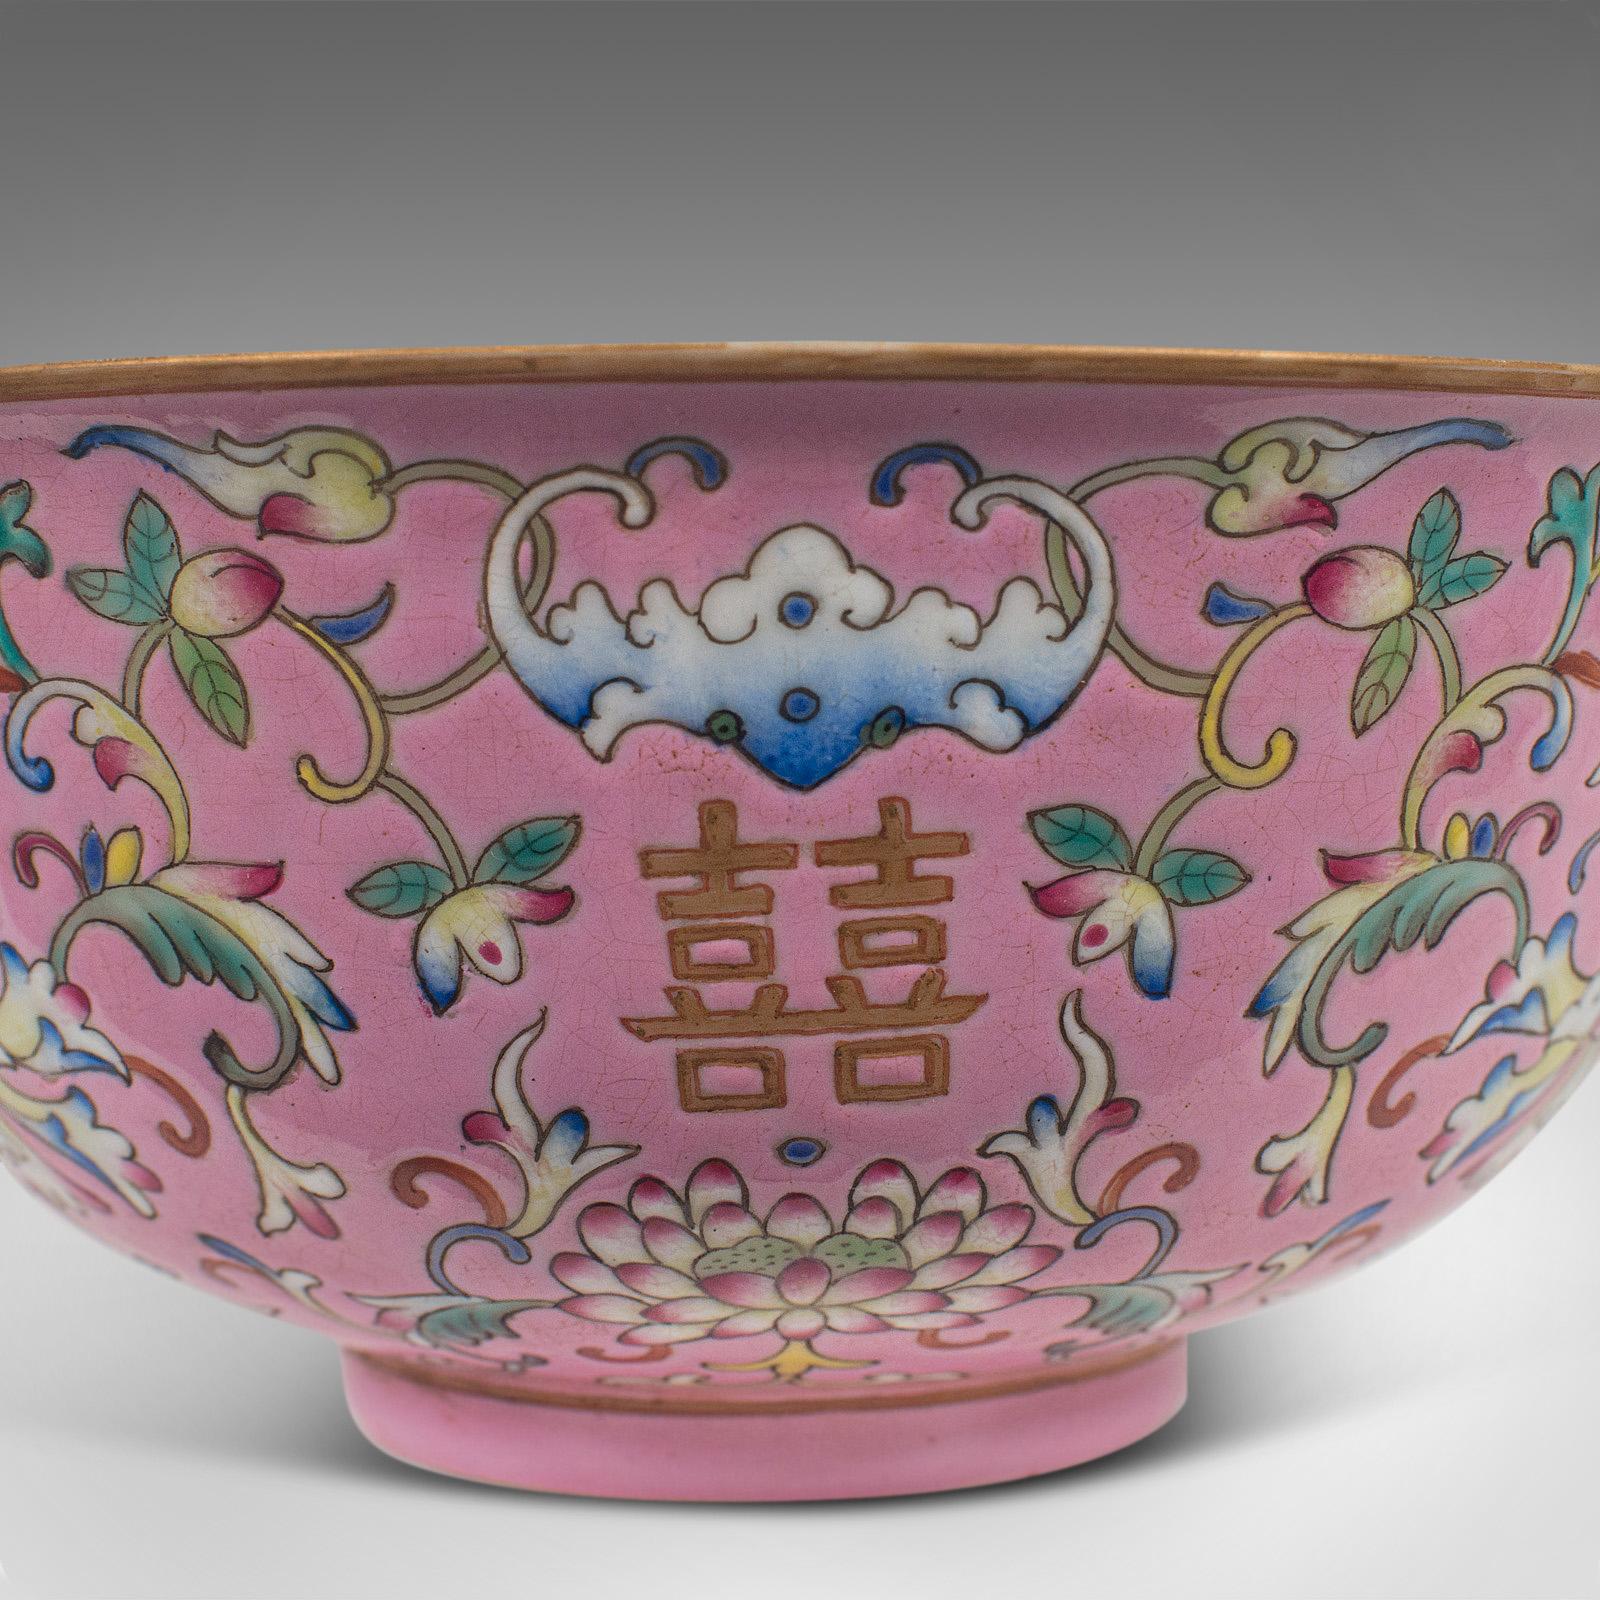 Antique Decorative Marriage Bowl, Chinese, Ceramic, Ceremonial, Dish, circa 1880 7